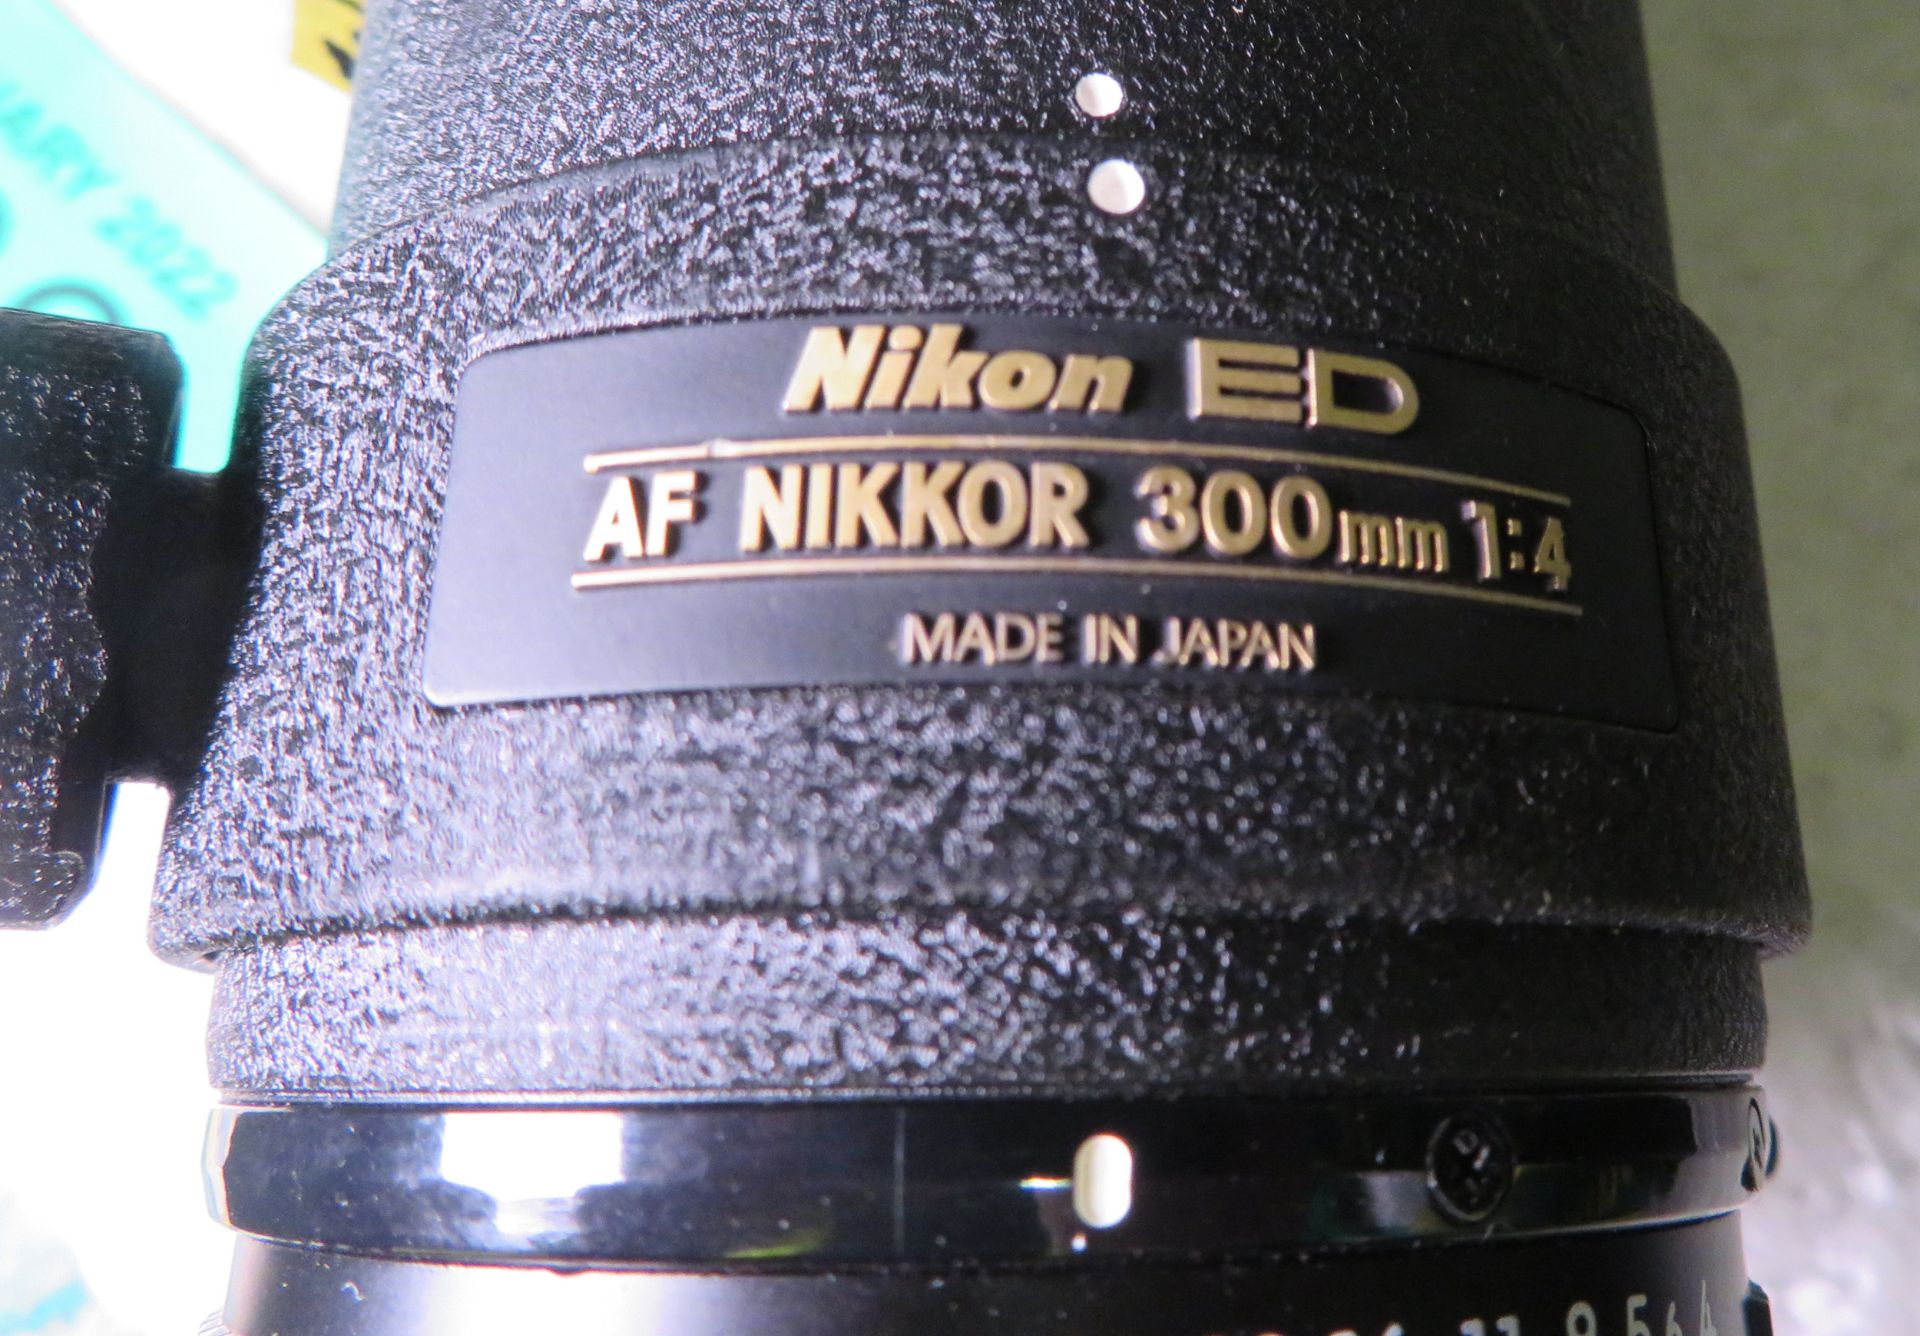 Nikon ED AF Nikkor 300mm 1:4 Lens - serial no. 201623 & Nikon CL-42 Case - Image 4 of 5